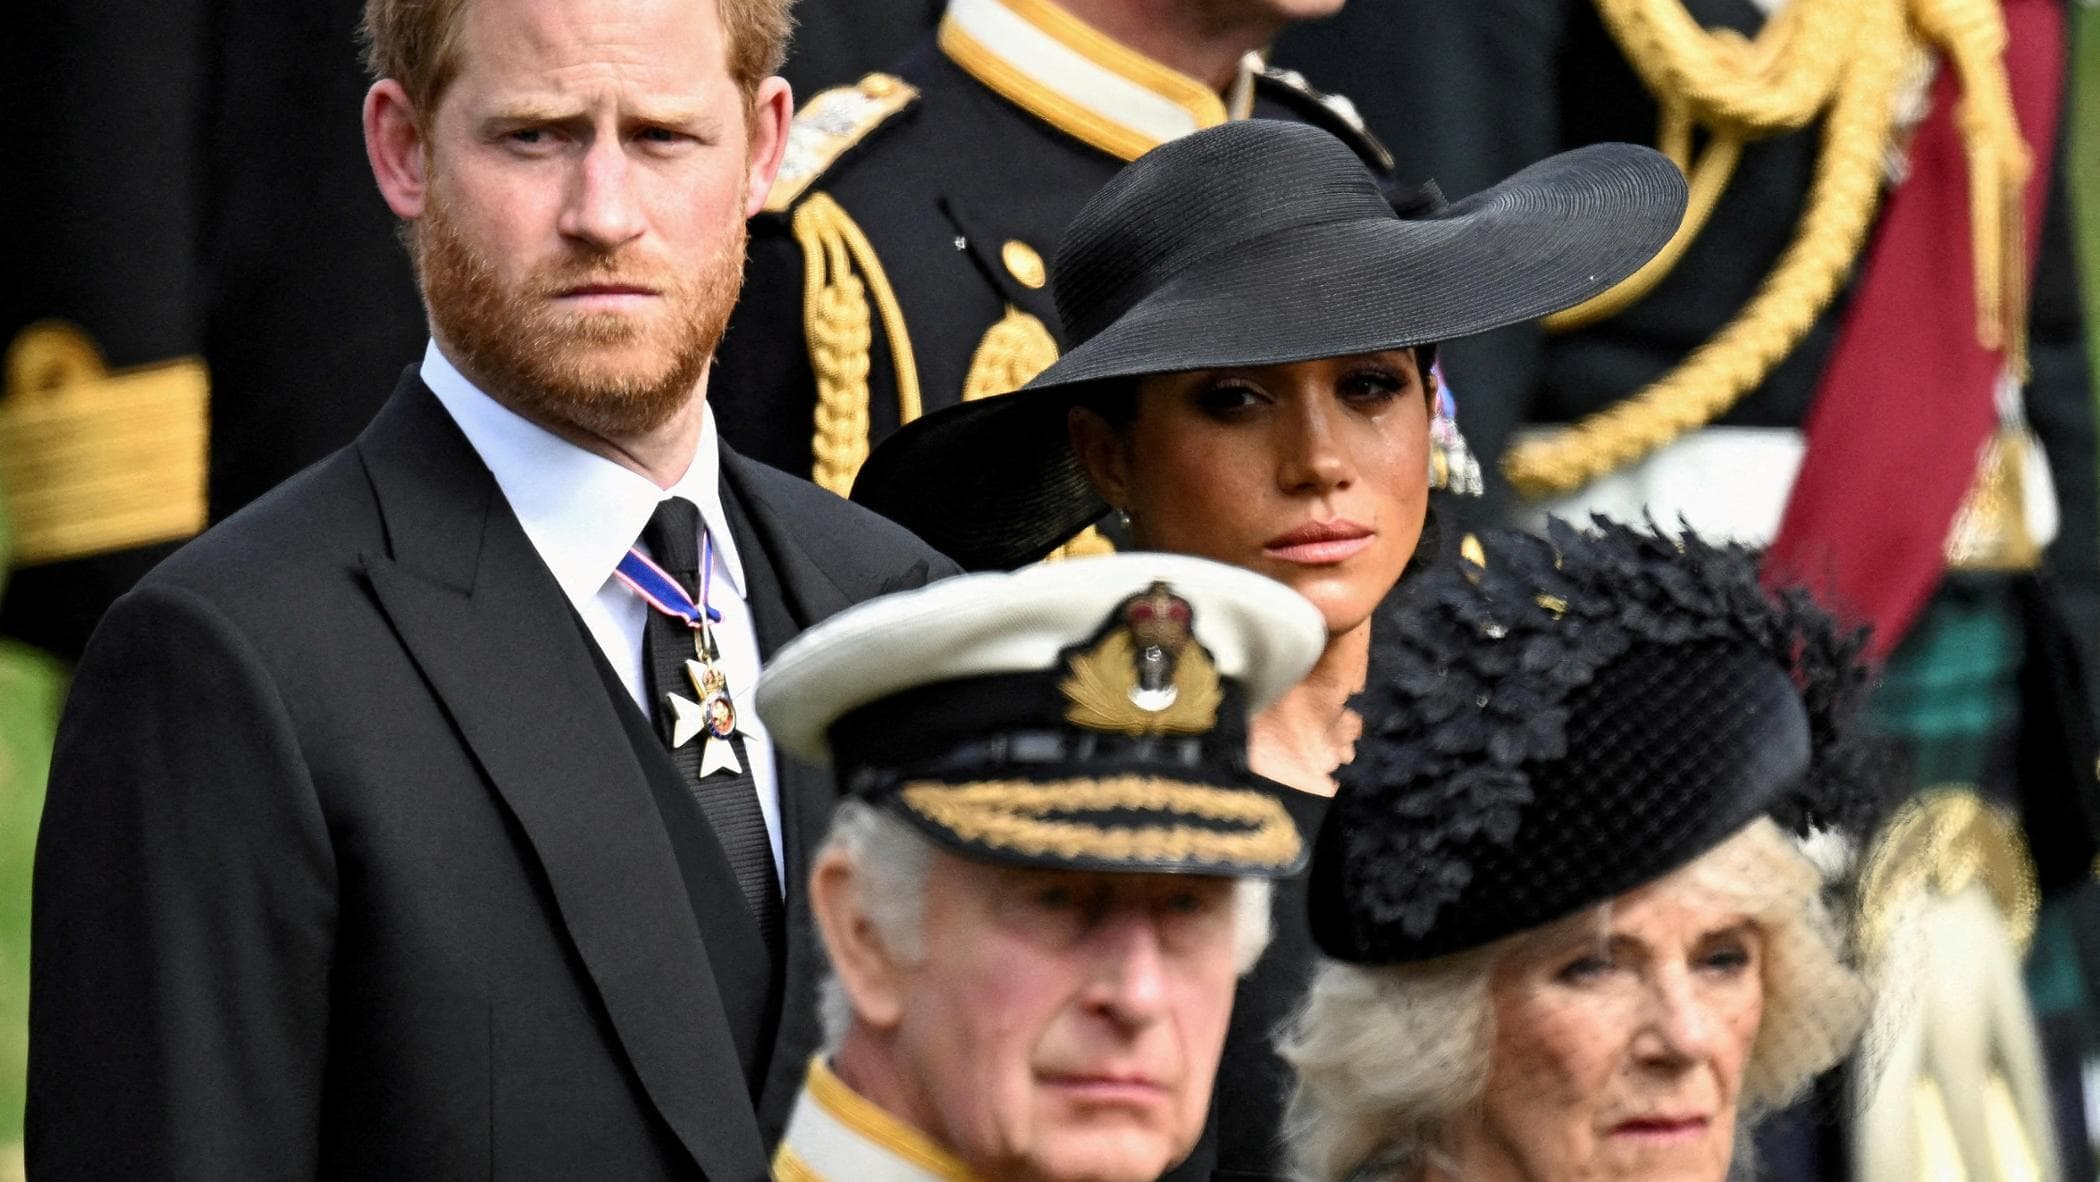 Royal Family, Harry a Londra ma il padre Carlo non lo incontrerà: “Troppi impegni”